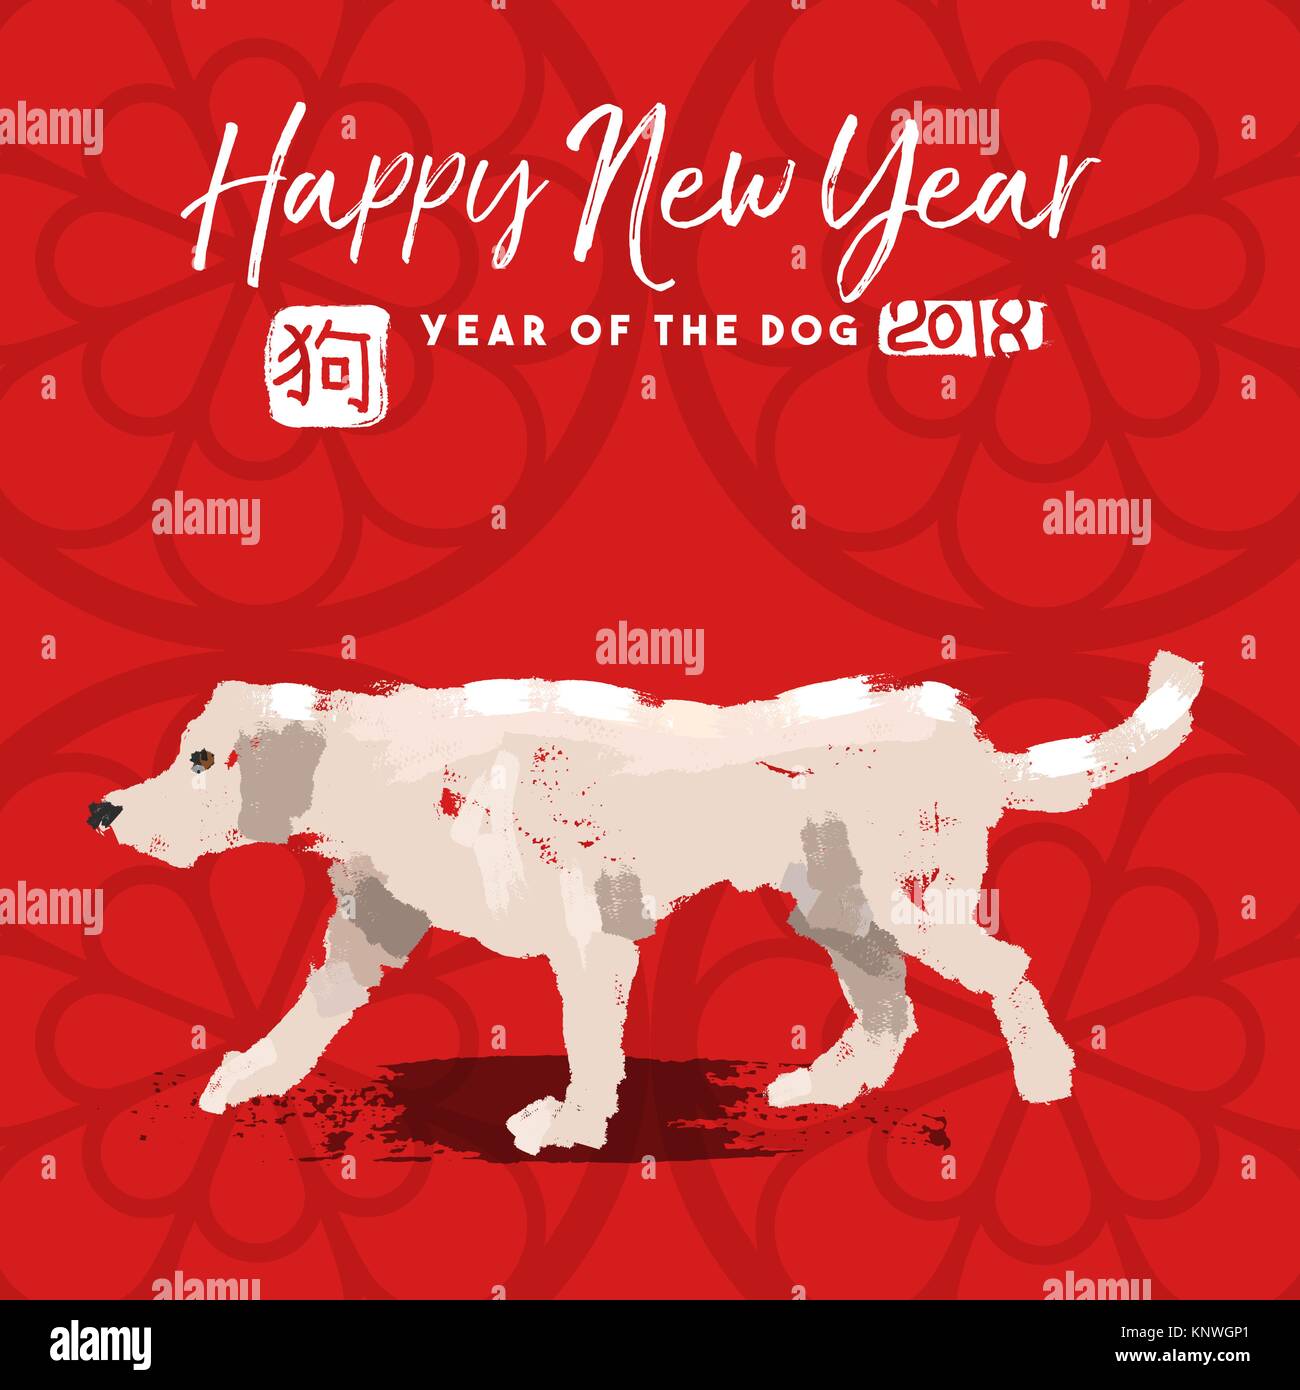 2018 Happy Chinese New Year Greeting Card Design mit Hand gezeichnete Tier Abbildung und traditionellen Kalligraphie, dass Hund bedeutet. EPS 10 Vektor. Stock Vektor